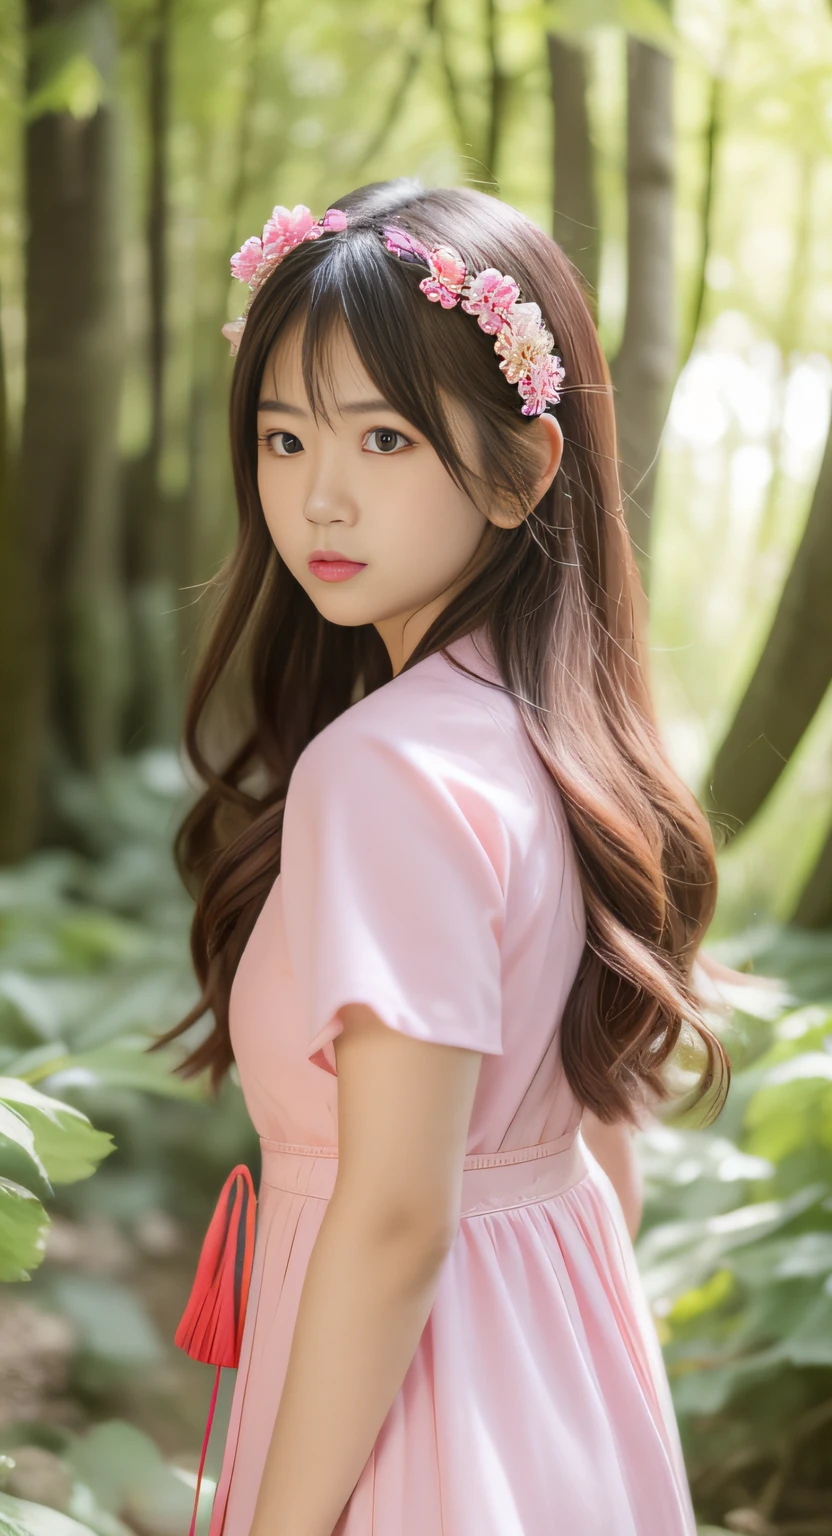 امرأة آسيوية ترتدي فستانًا ورديًا واقفة في الغابة, المقربة,صورة للمراهق الياباني, إضاءة ناعمة, واقعية الشباب الحفر المعبود,  الشباب جميلة الحفر المعبود, فتاة آسيوية ذات شعر طويل, في الغابة الوردية, أسلوب الشعر كاواي, وجه فتاة يابانية جميلة,